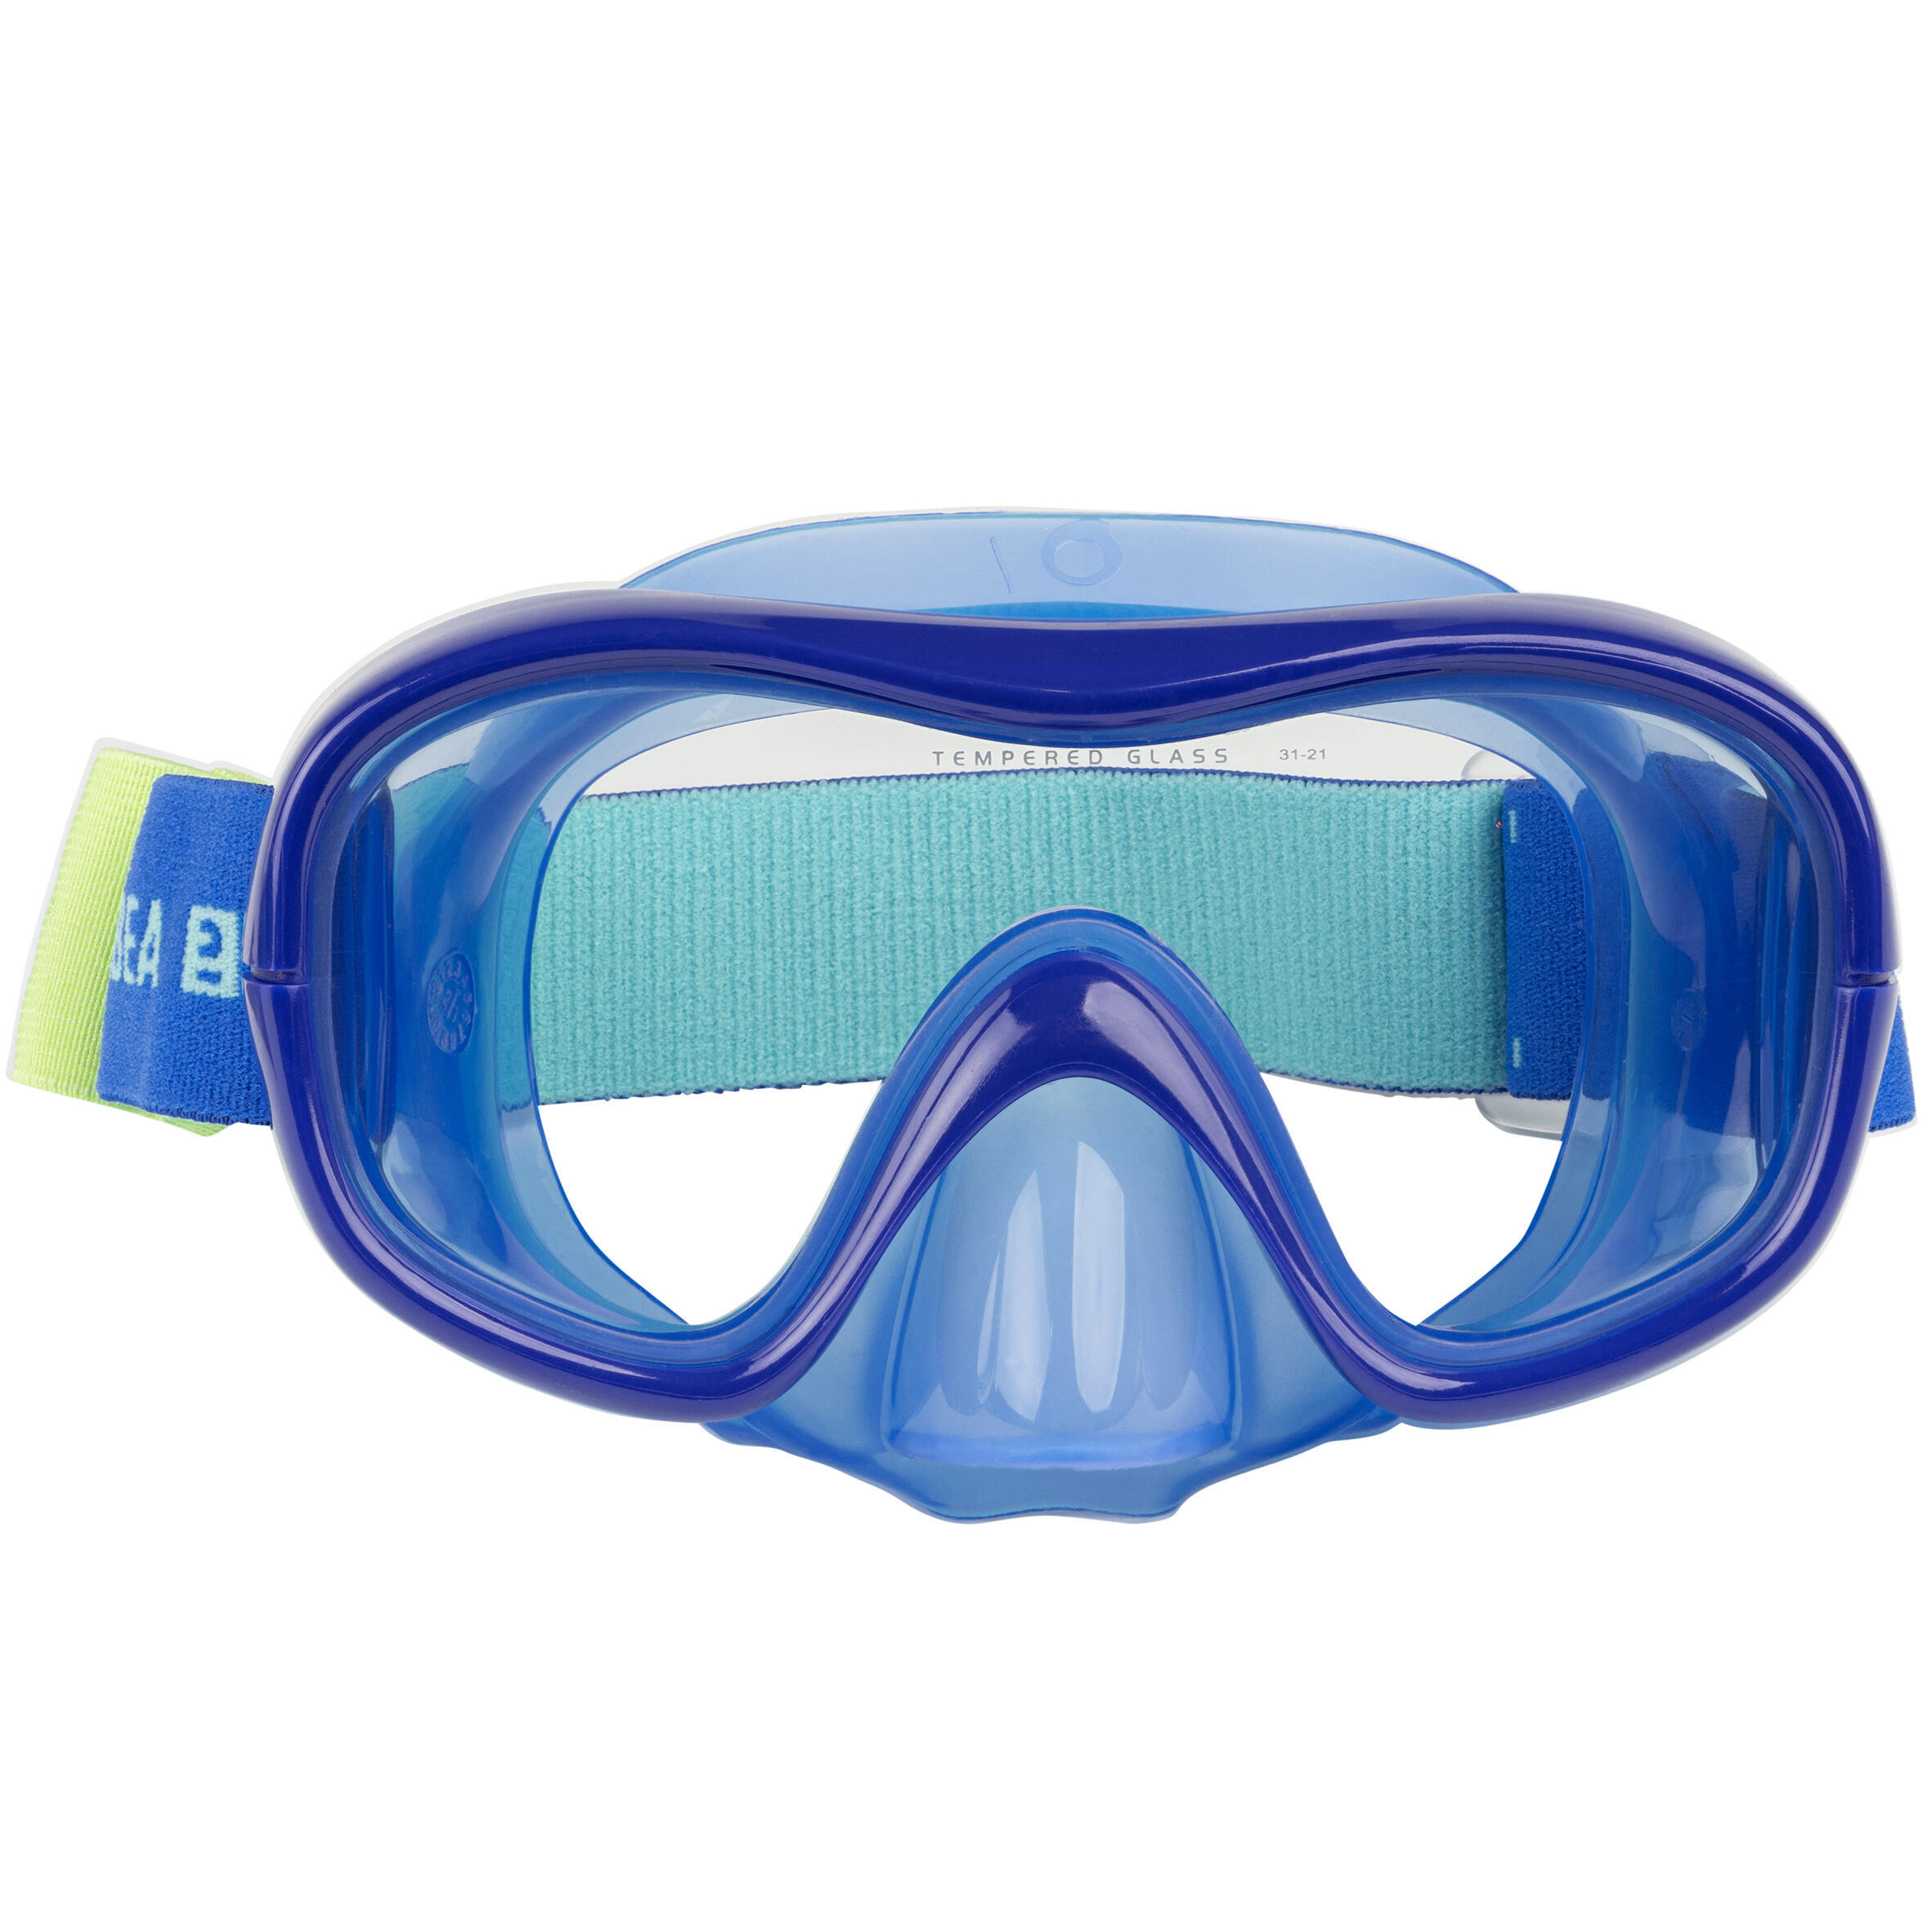 Diving mask - 100 Comfort Blue 2/9